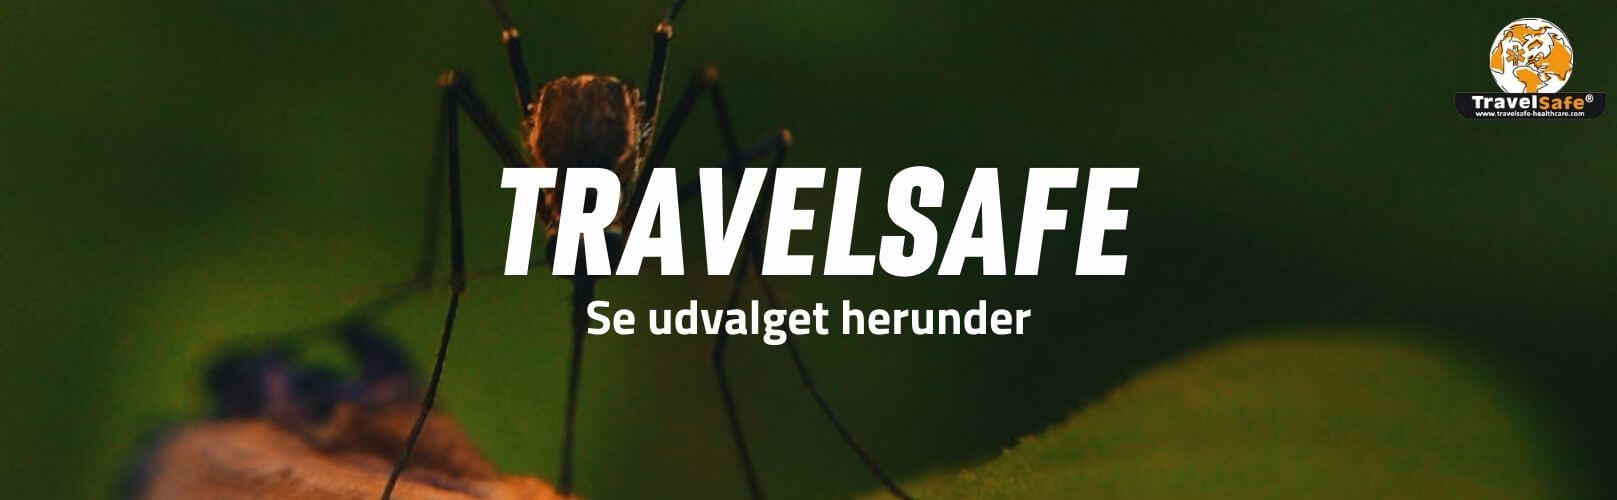 TravelSafe brand banner